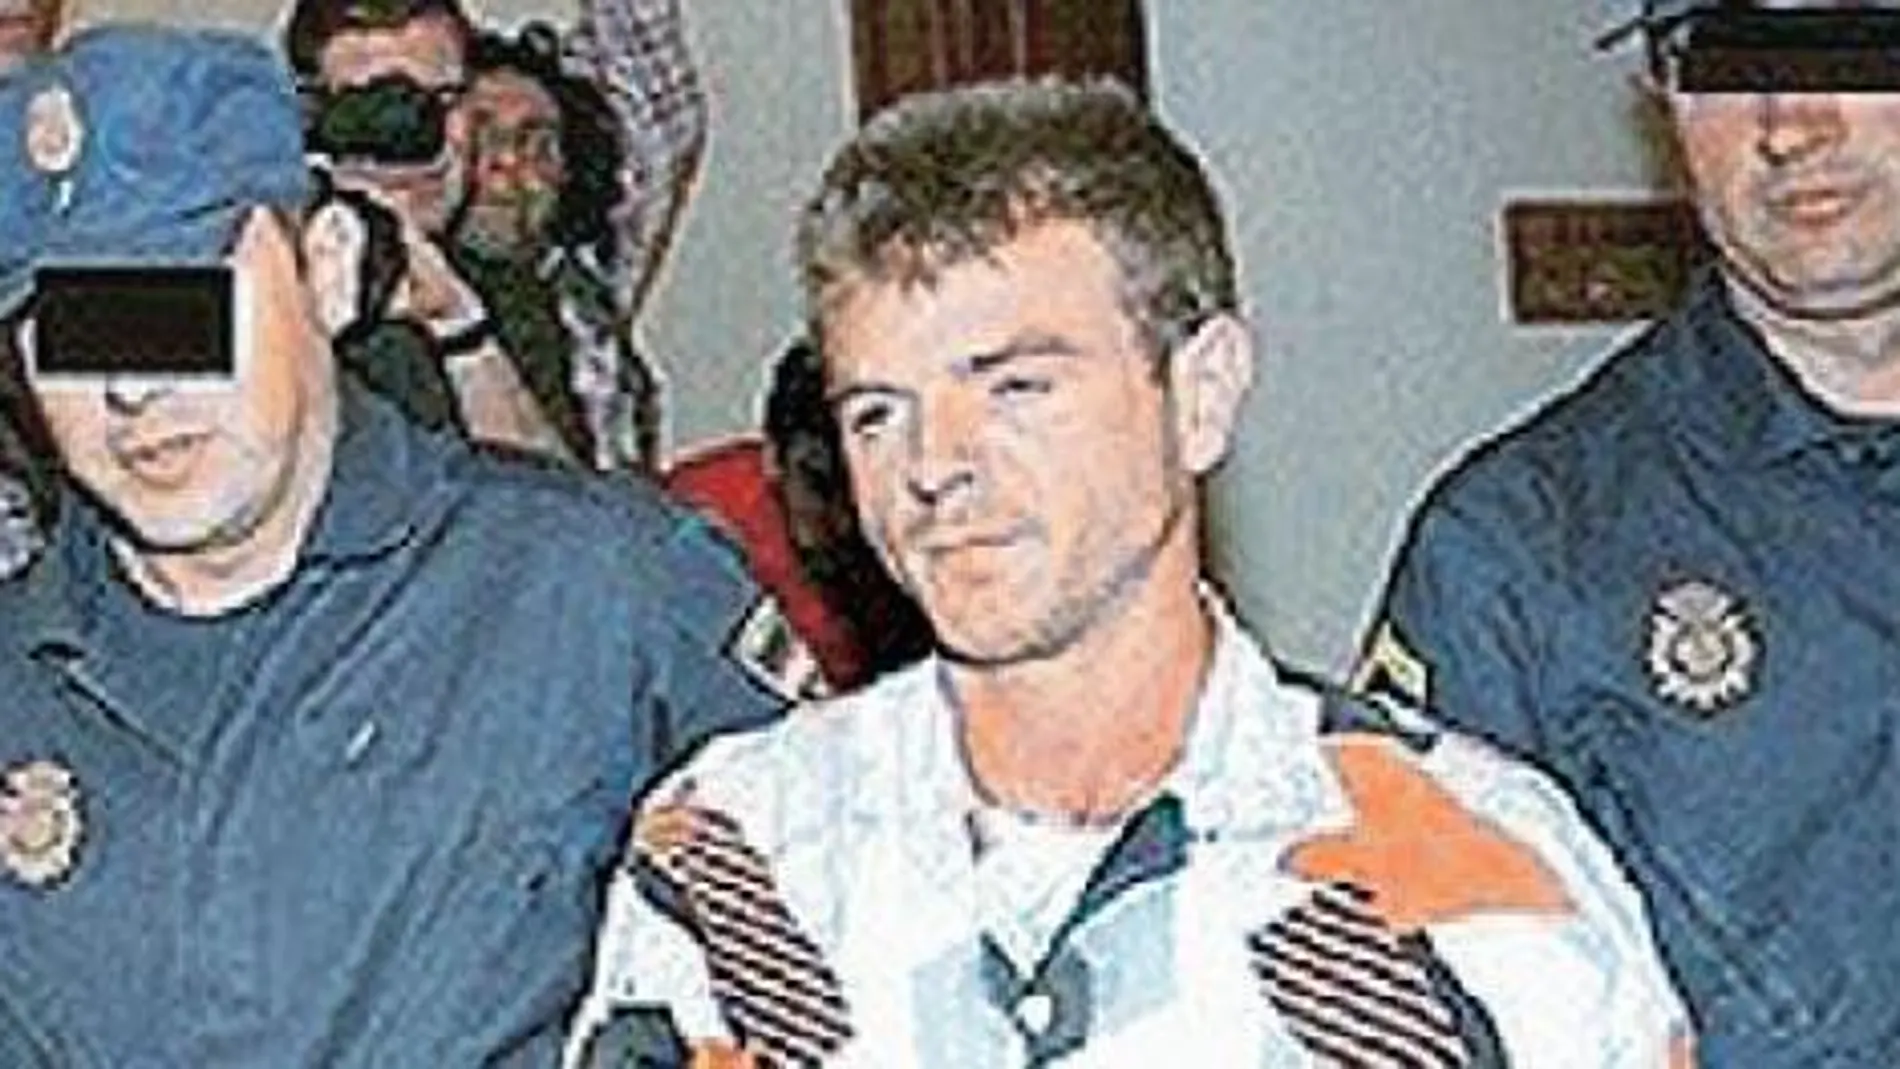 Miguel Ricart, escoltado por dos agentes durante el juicio por el crimen de Alcàsser